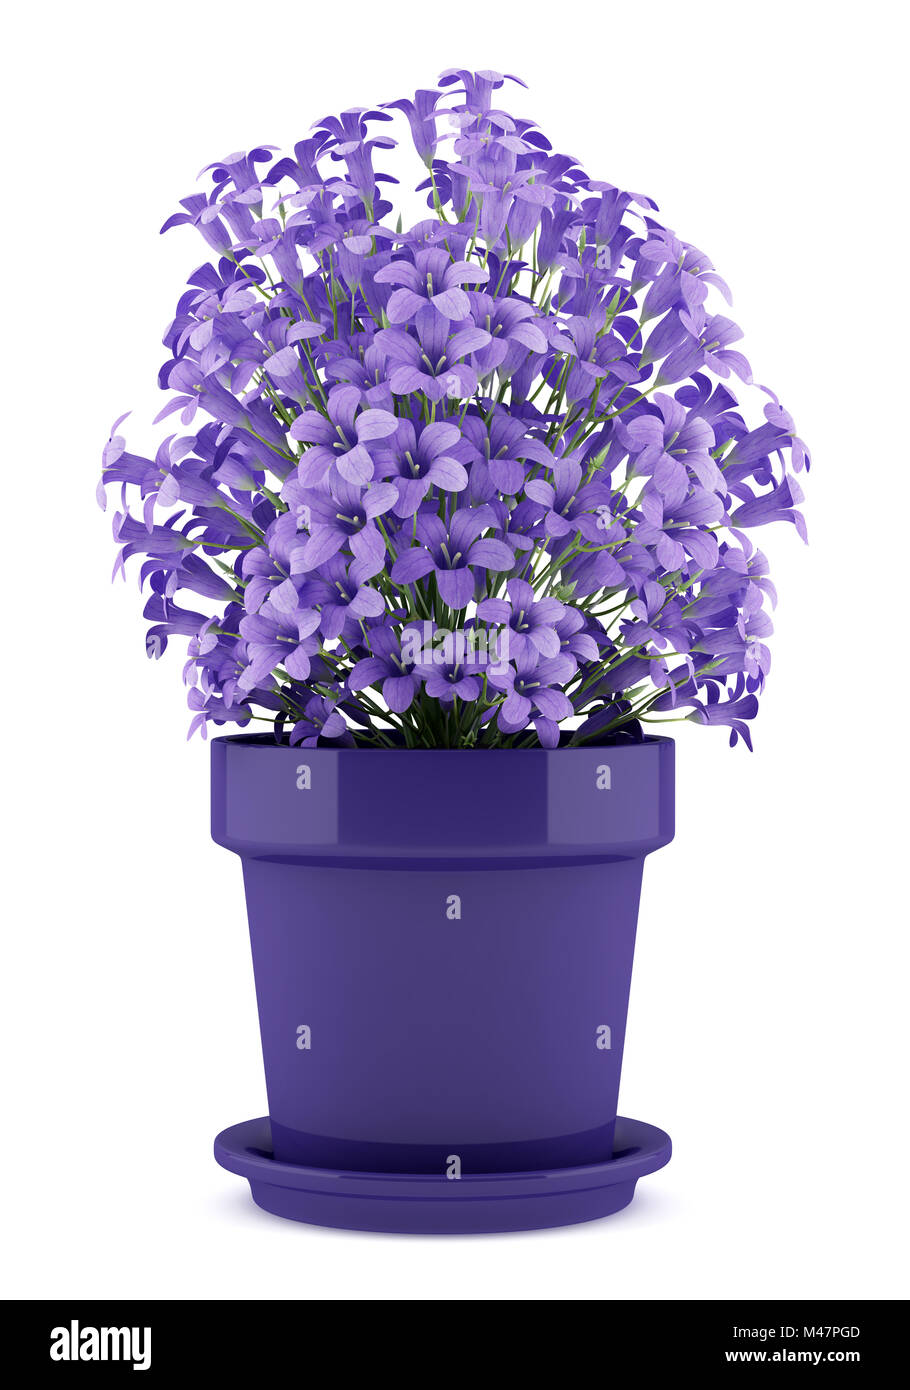 Fiori viola nel recipiente isolato su sfondo bianco Foto Stock